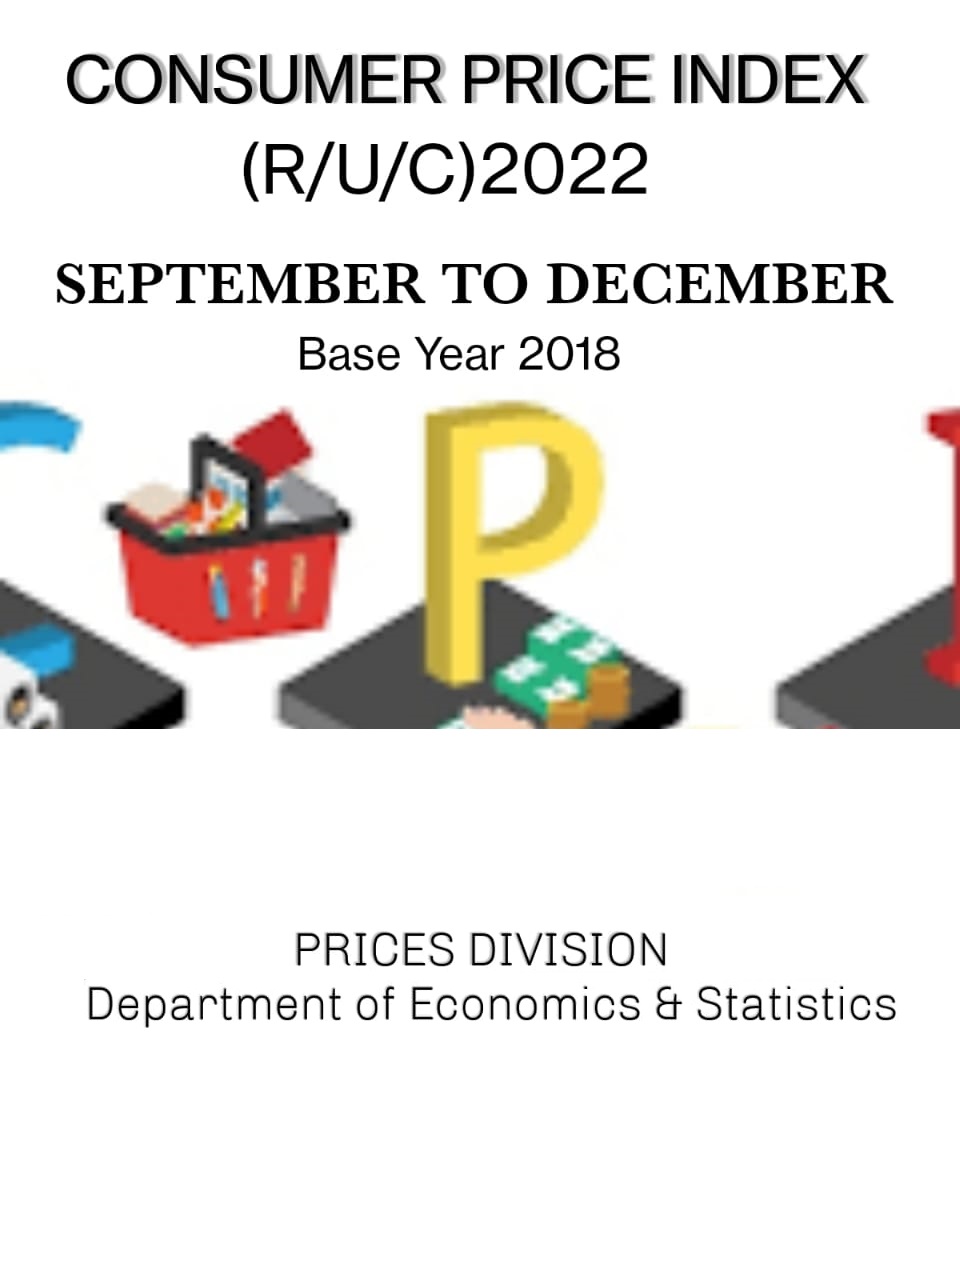 Consumer Price Index (R/U/C) Sept, Oct, Nov, Dec 2022